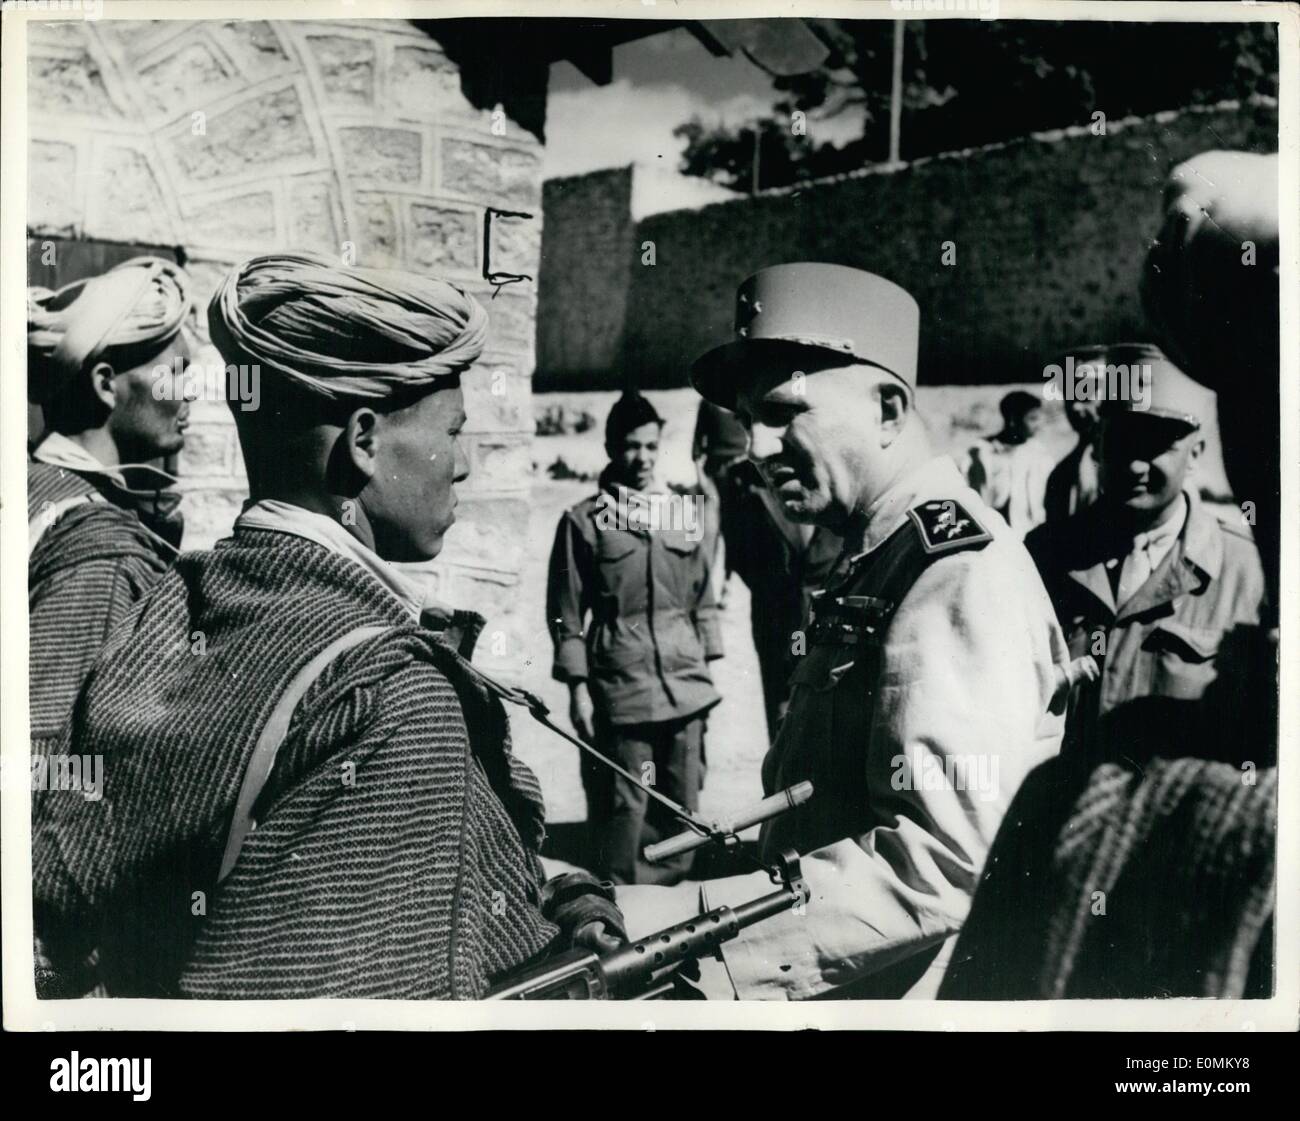 10 octobre 1955 - General De Latour poste français Visites à Immouzzer. Photo : Keystone montre général de Latour, le résident général au Maroc - vu lorsqu'il a inspecté un poste français dans la zone d'Immouzzer des Mamoucha dans les montagnes de l'Atlas, théâtre d'une récente attaque de rebelles. Banque D'Images